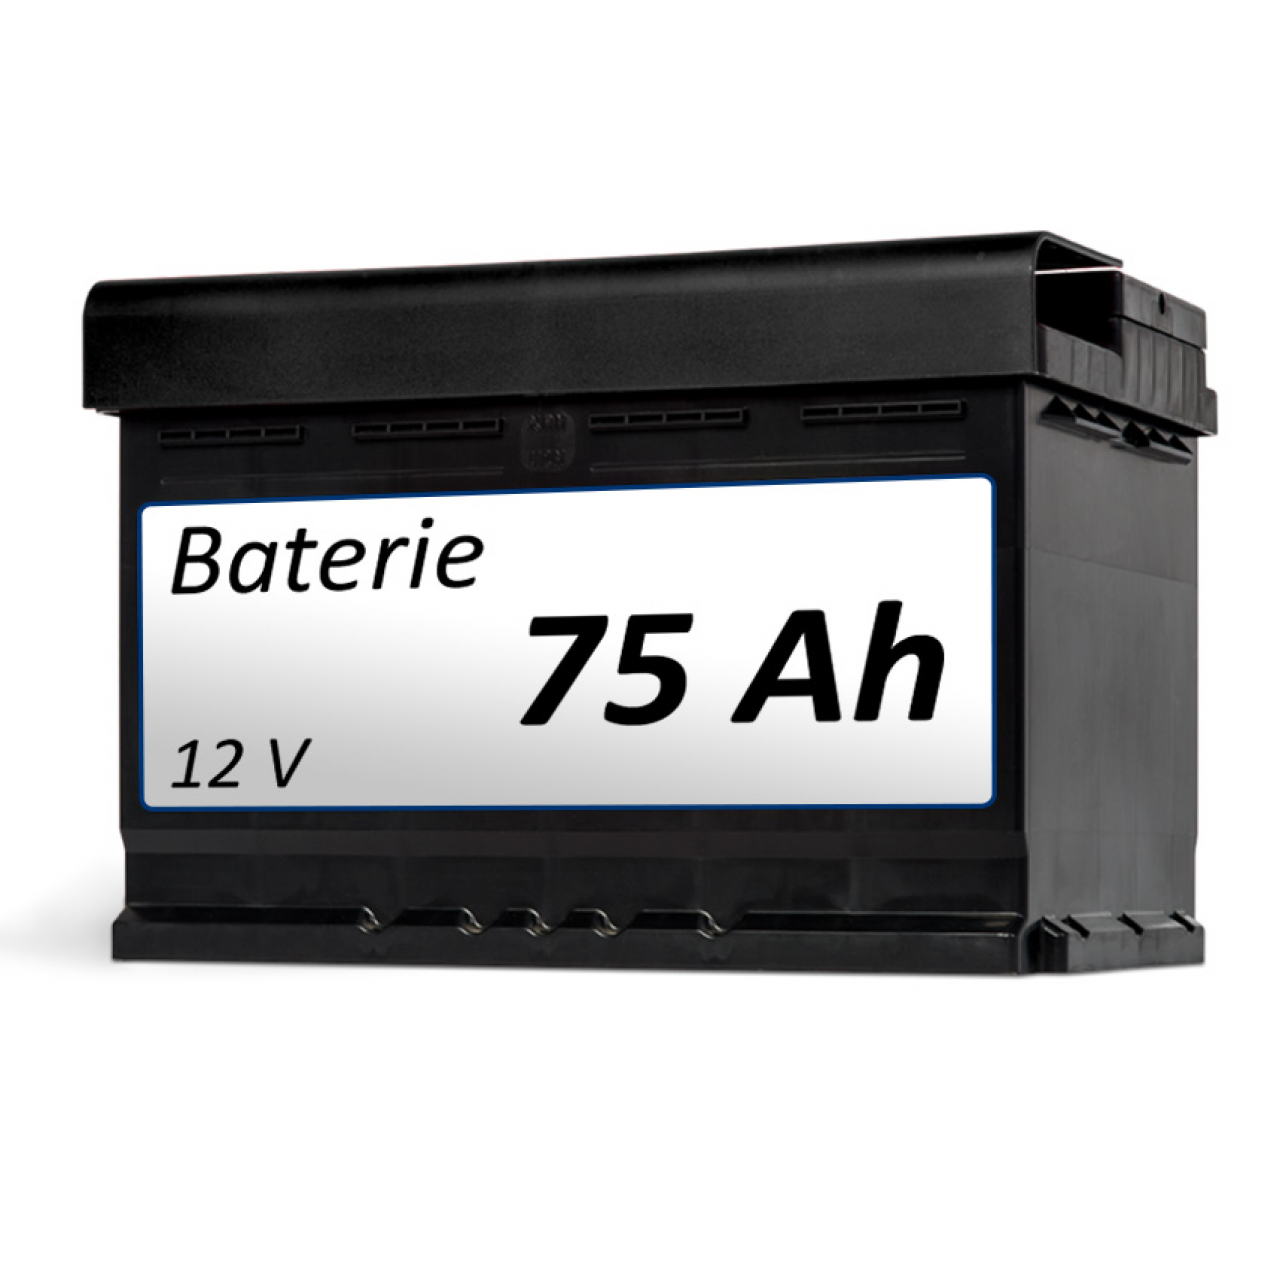 Baterie Batéria 75 Ah - k vozíku foto